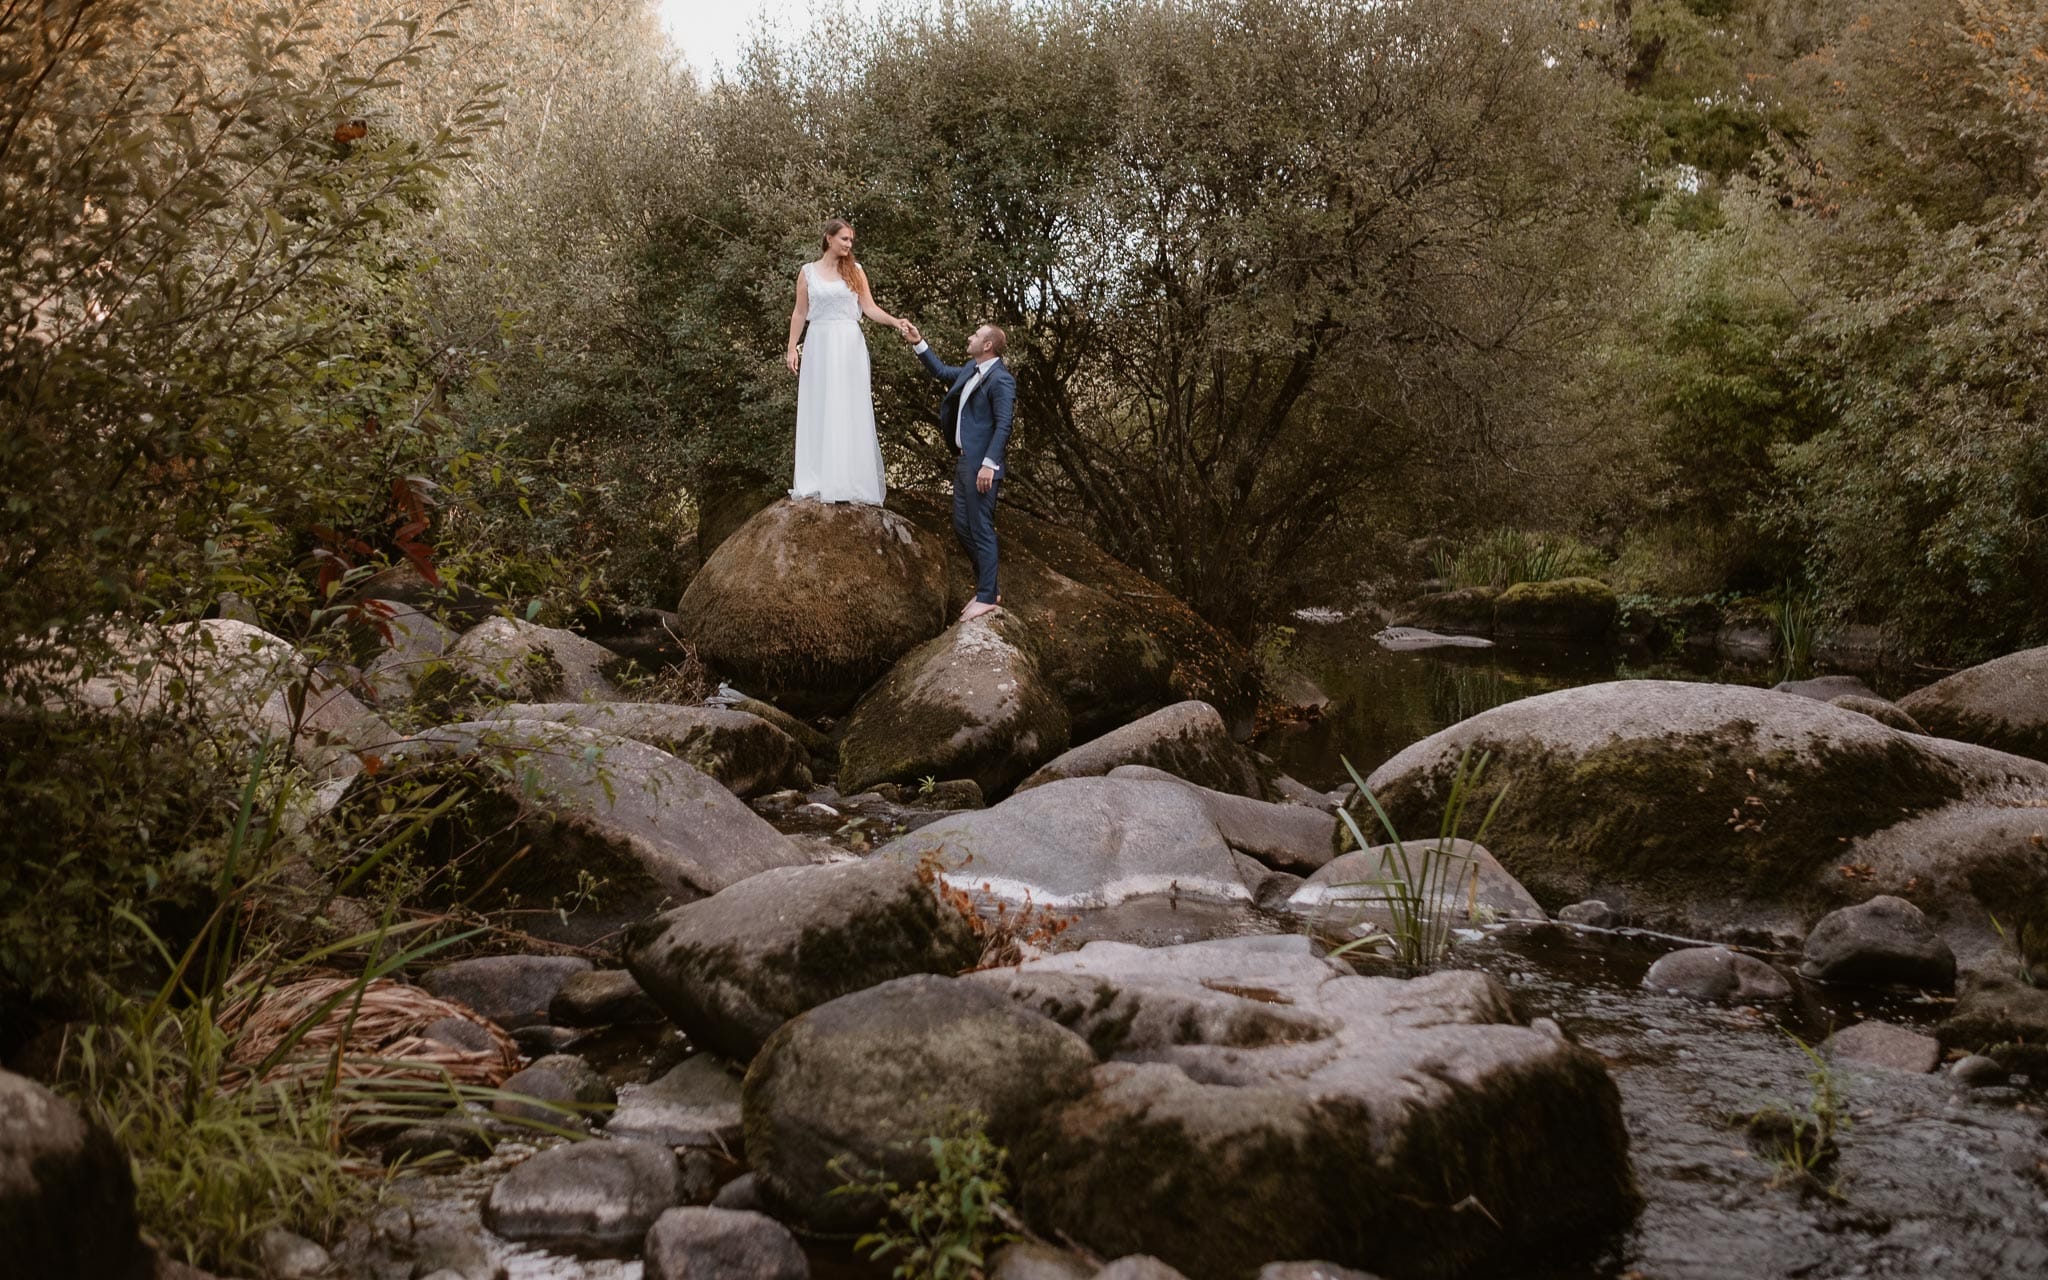 Séance couple après mariage naturelle et romantique près d’une rivière dans une vallée de roches en Vendée par Geoffrey Arnoldy photographe